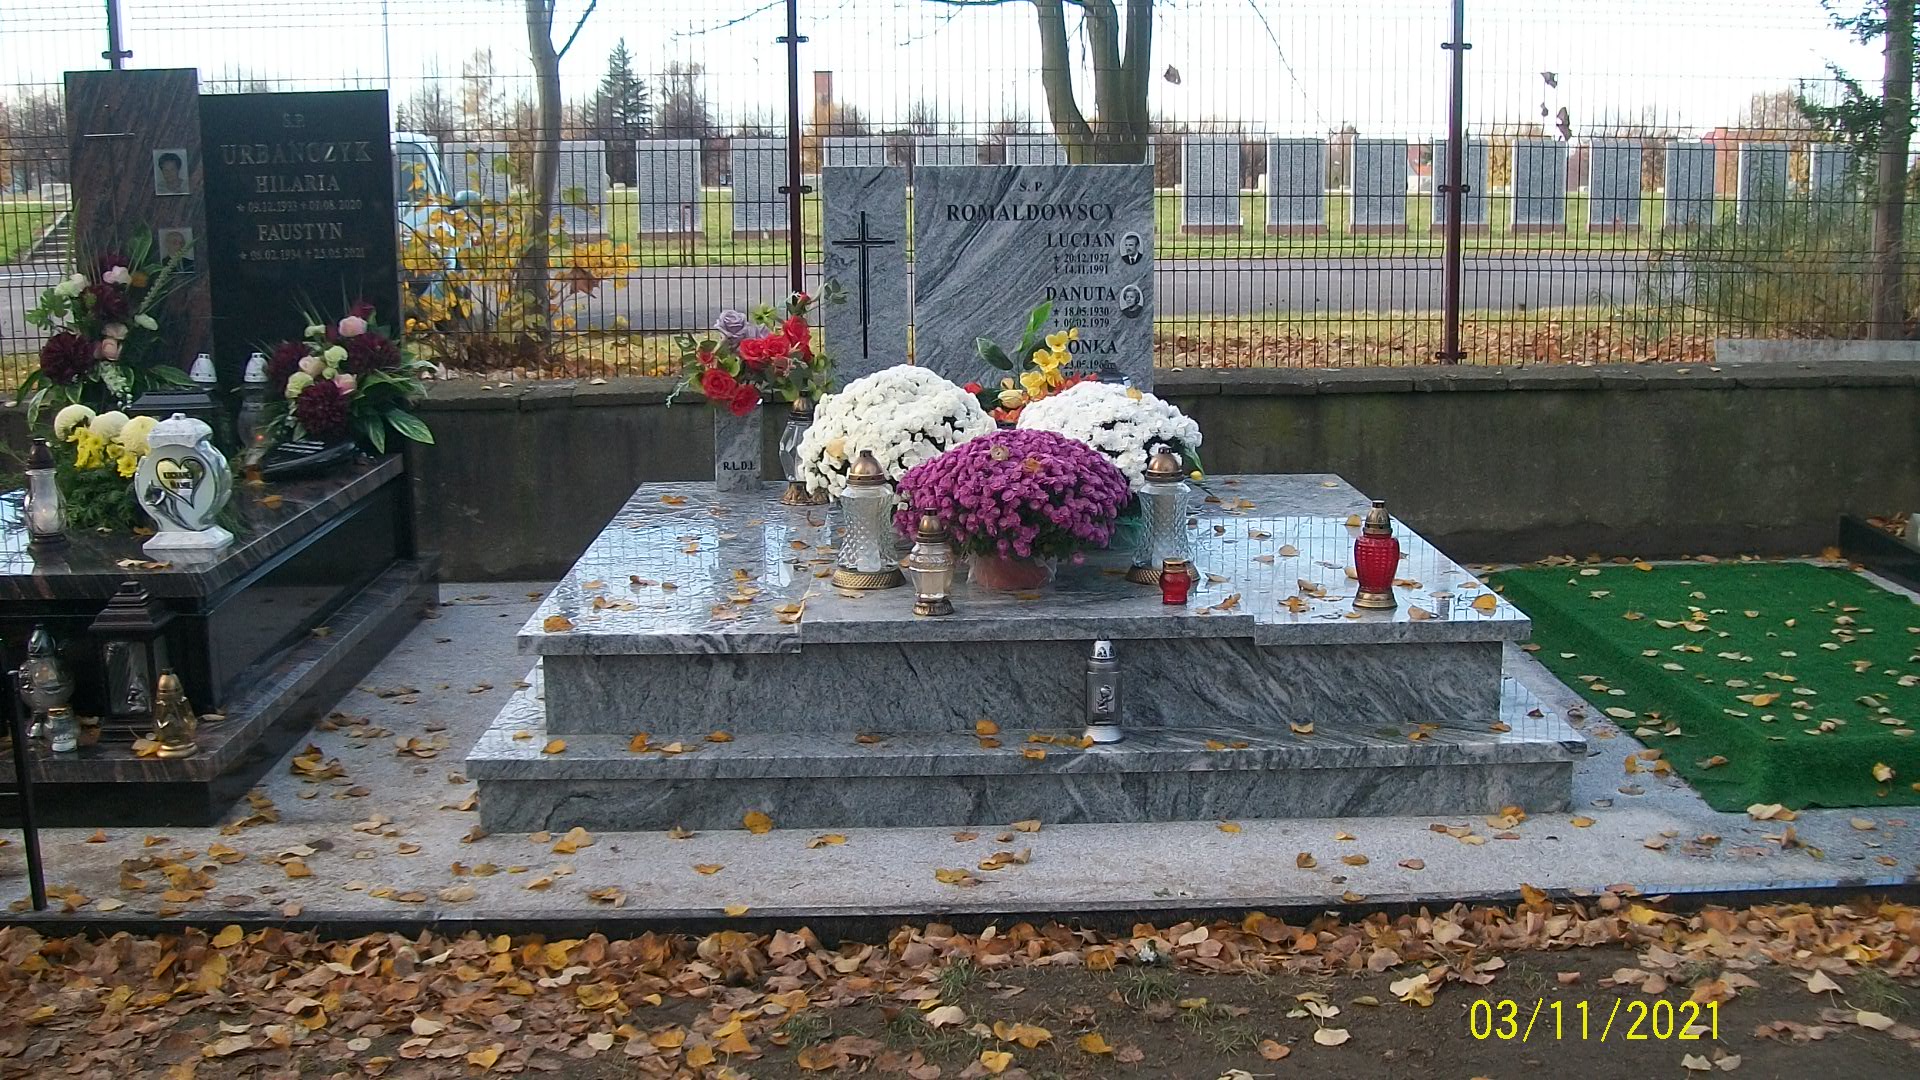 Zdjęcie grobu Iwona Romaldowska